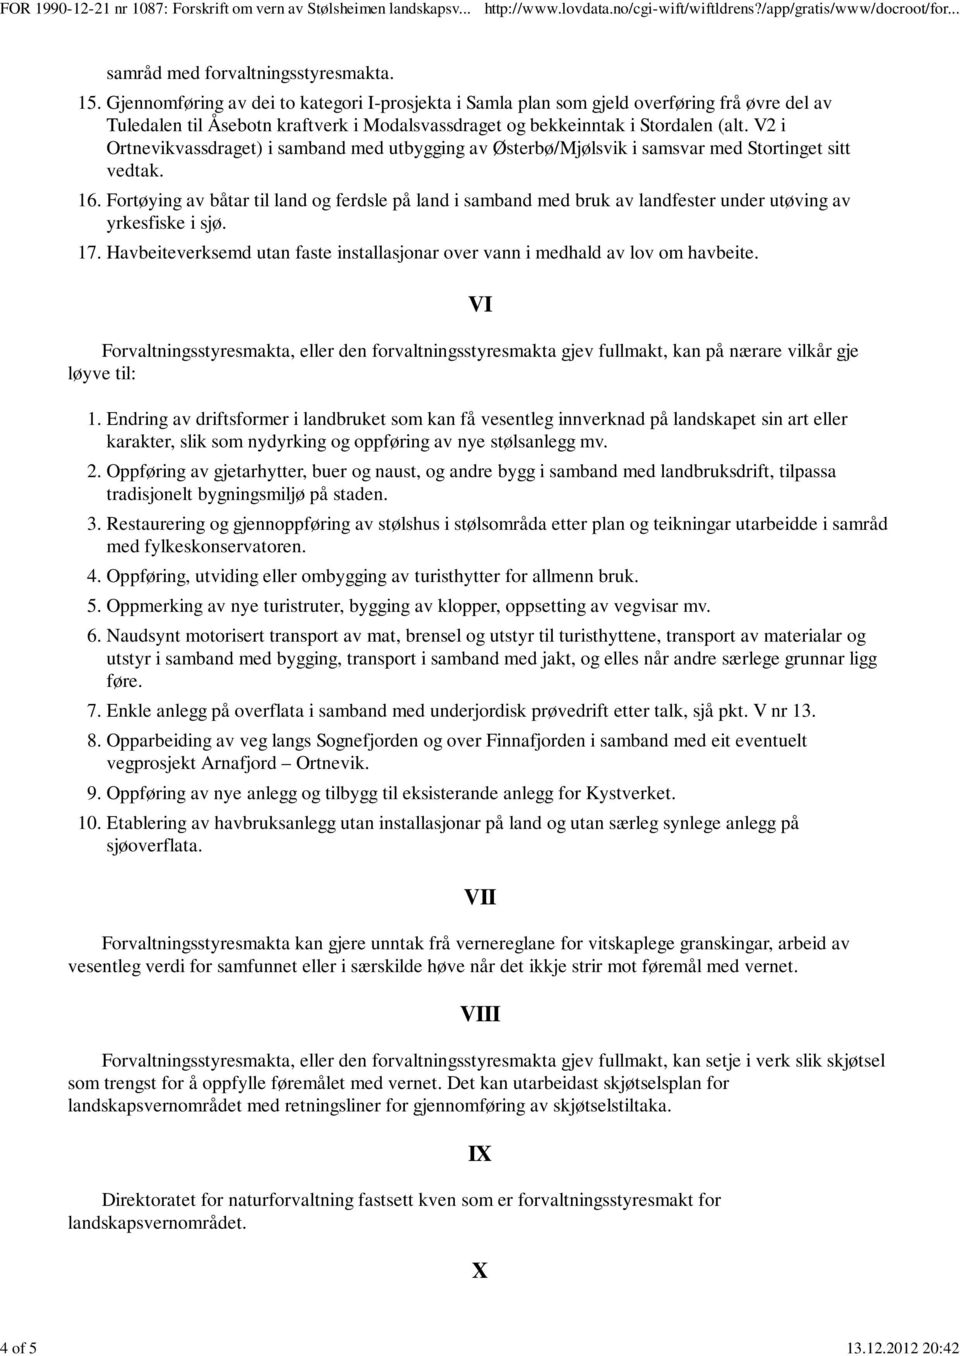 V2 i Ortnevikvassdraget) i samband med utbygging av Østerbø/Mjølsvik i samsvar med Stortinget sitt vedtak. 16.